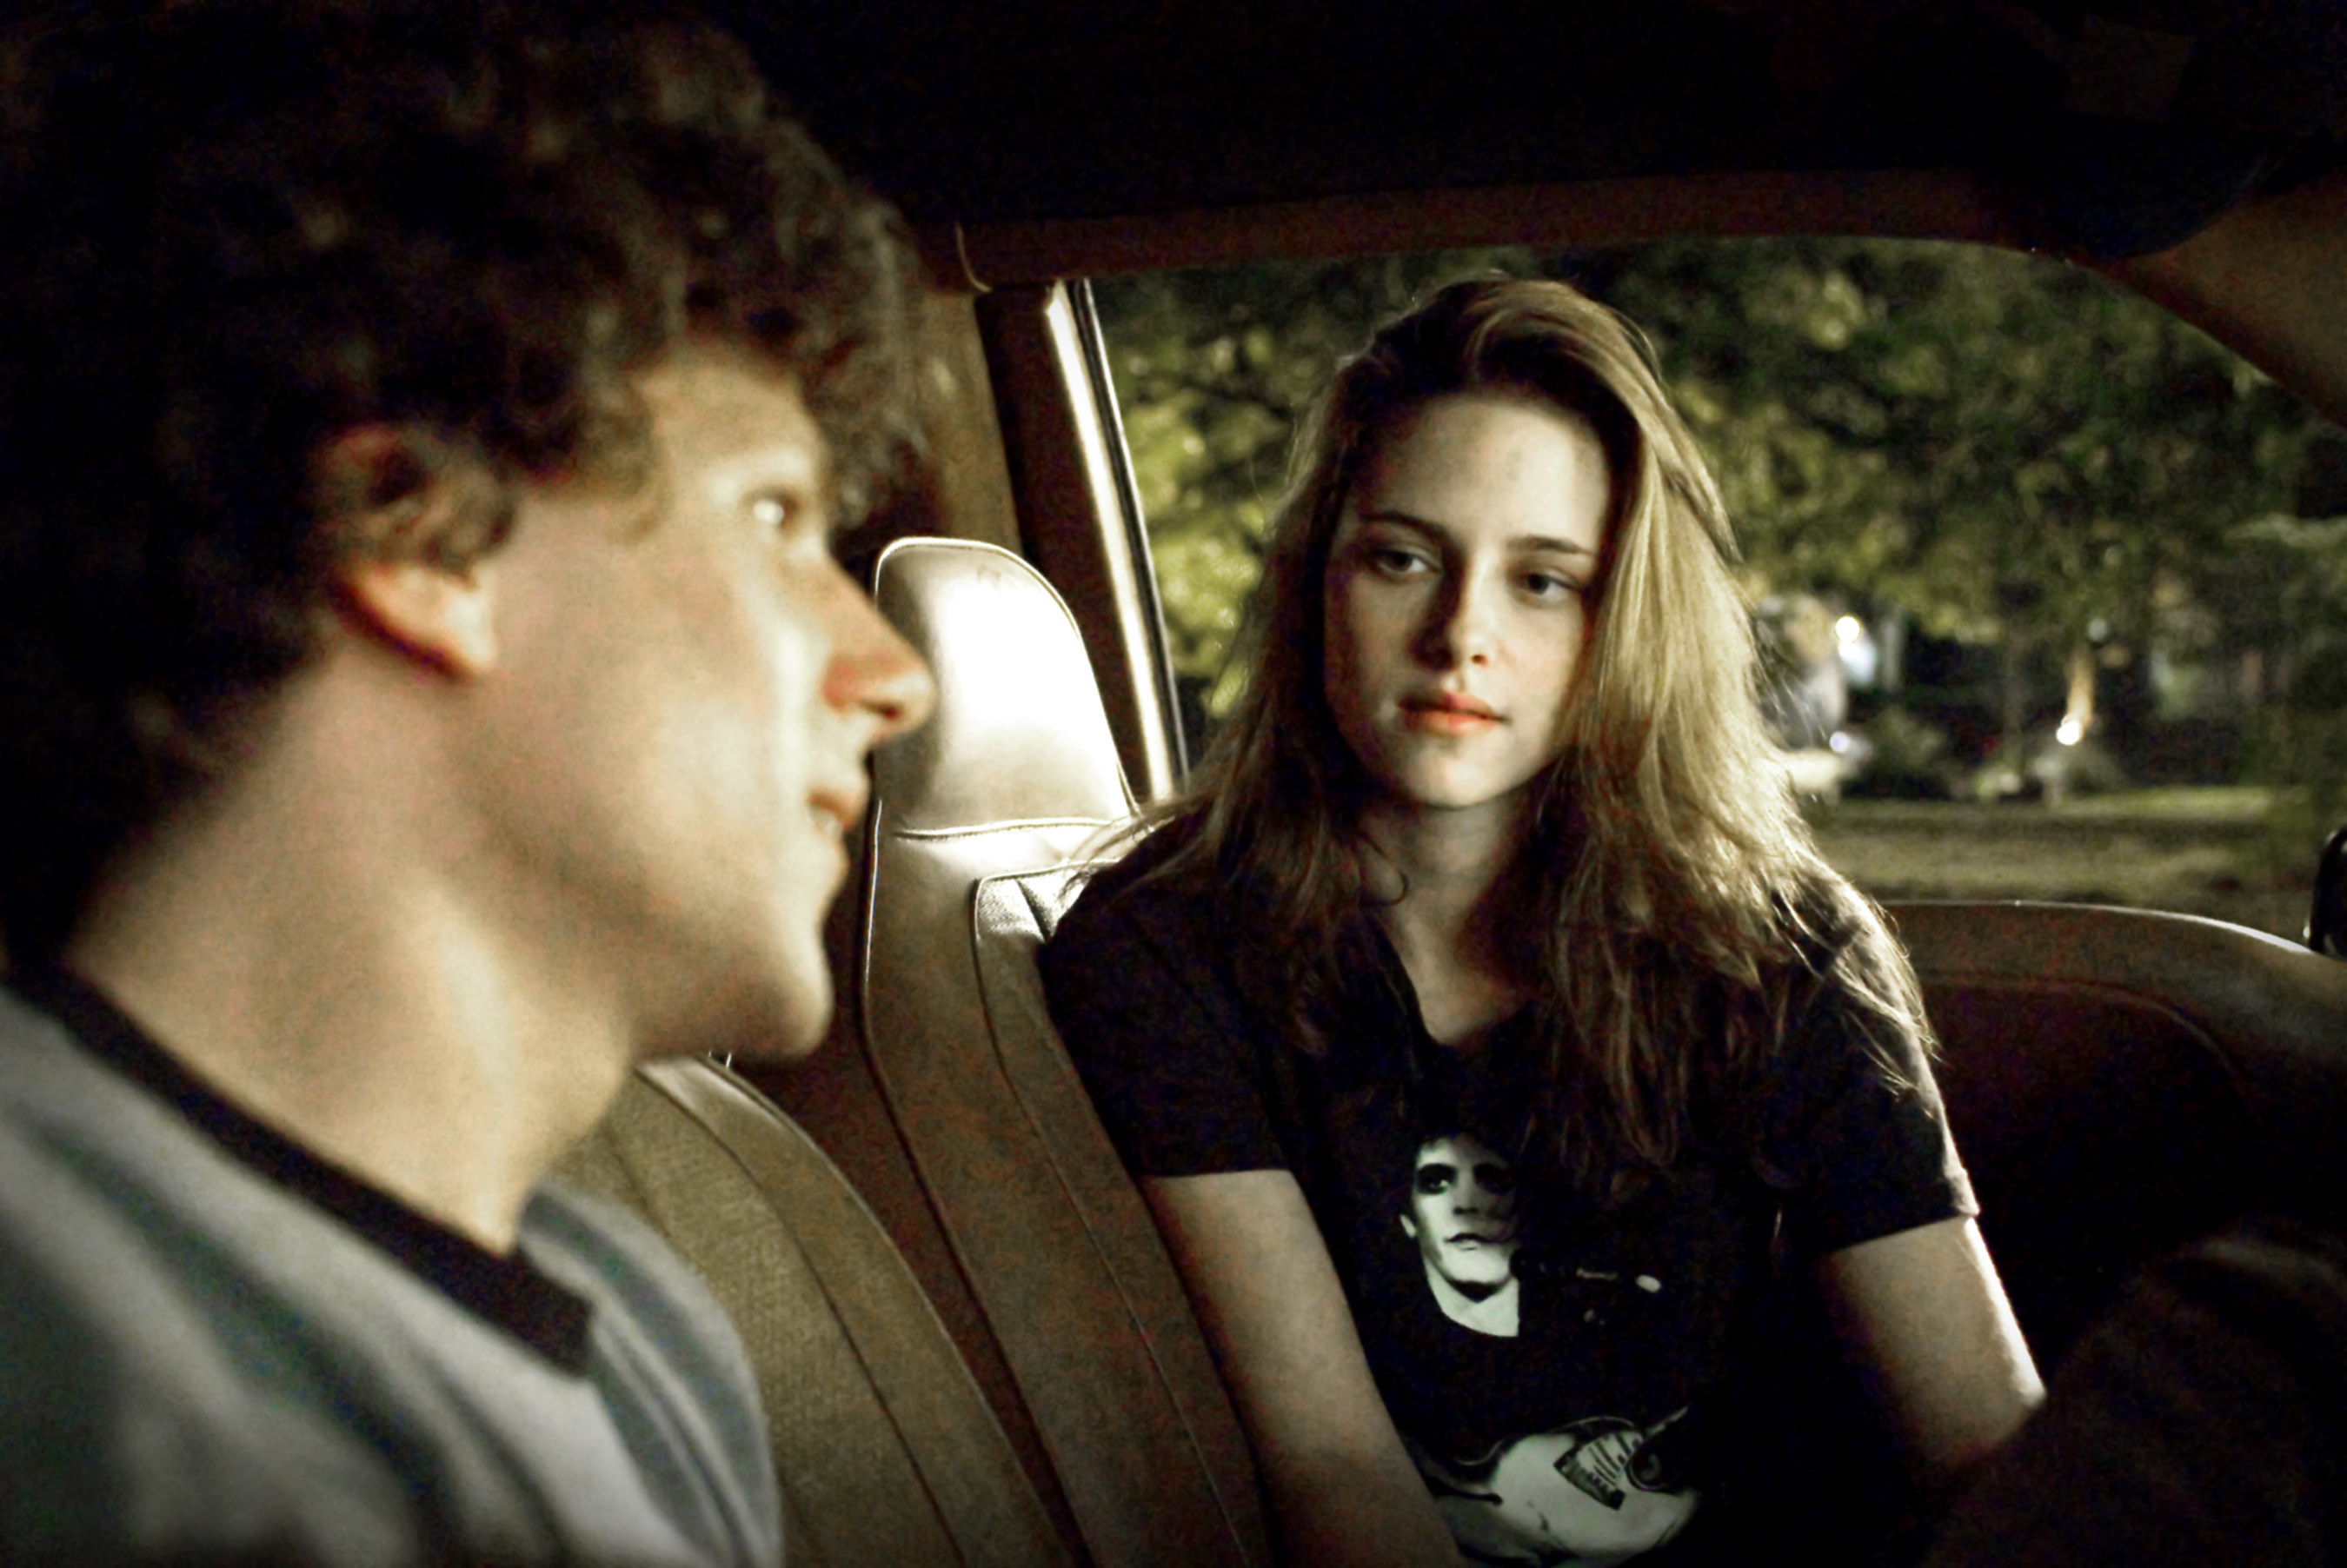 Kristen Stewart talks with Jesse Eisenberg in a car